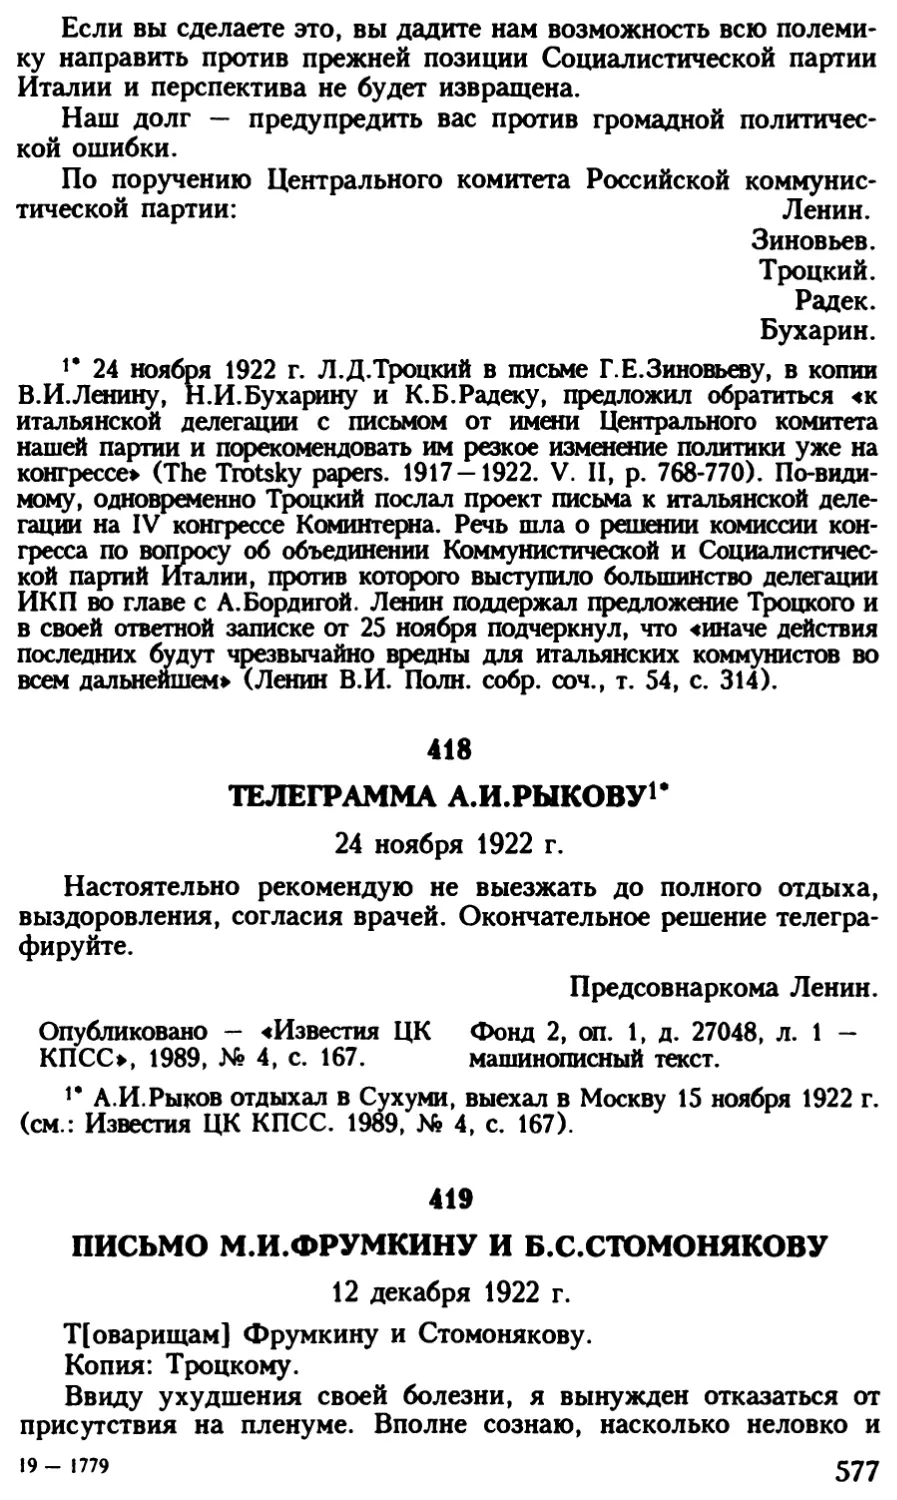 419. Письмо М.И.Фрумкину и Б.С.Стомонякову 12 декабря 1922 г. .